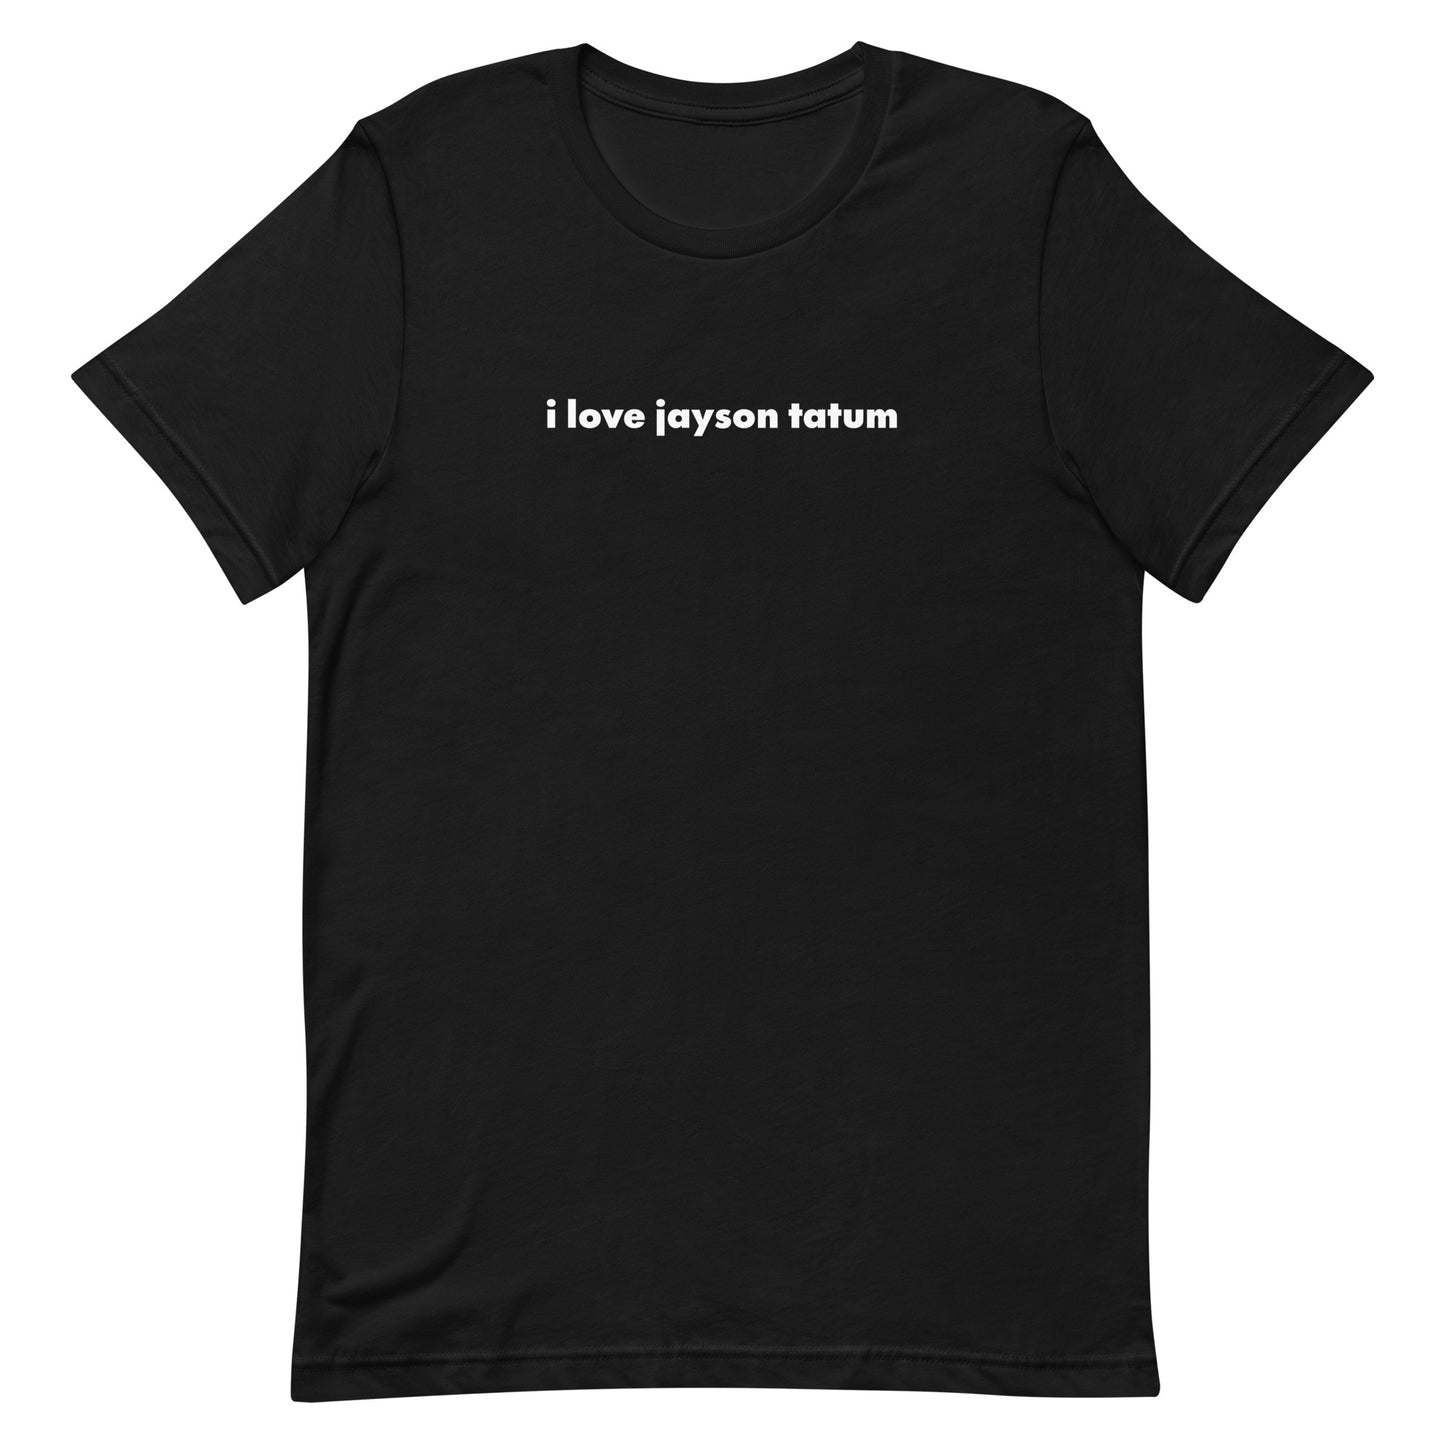 i love jayson tatum t-shirt